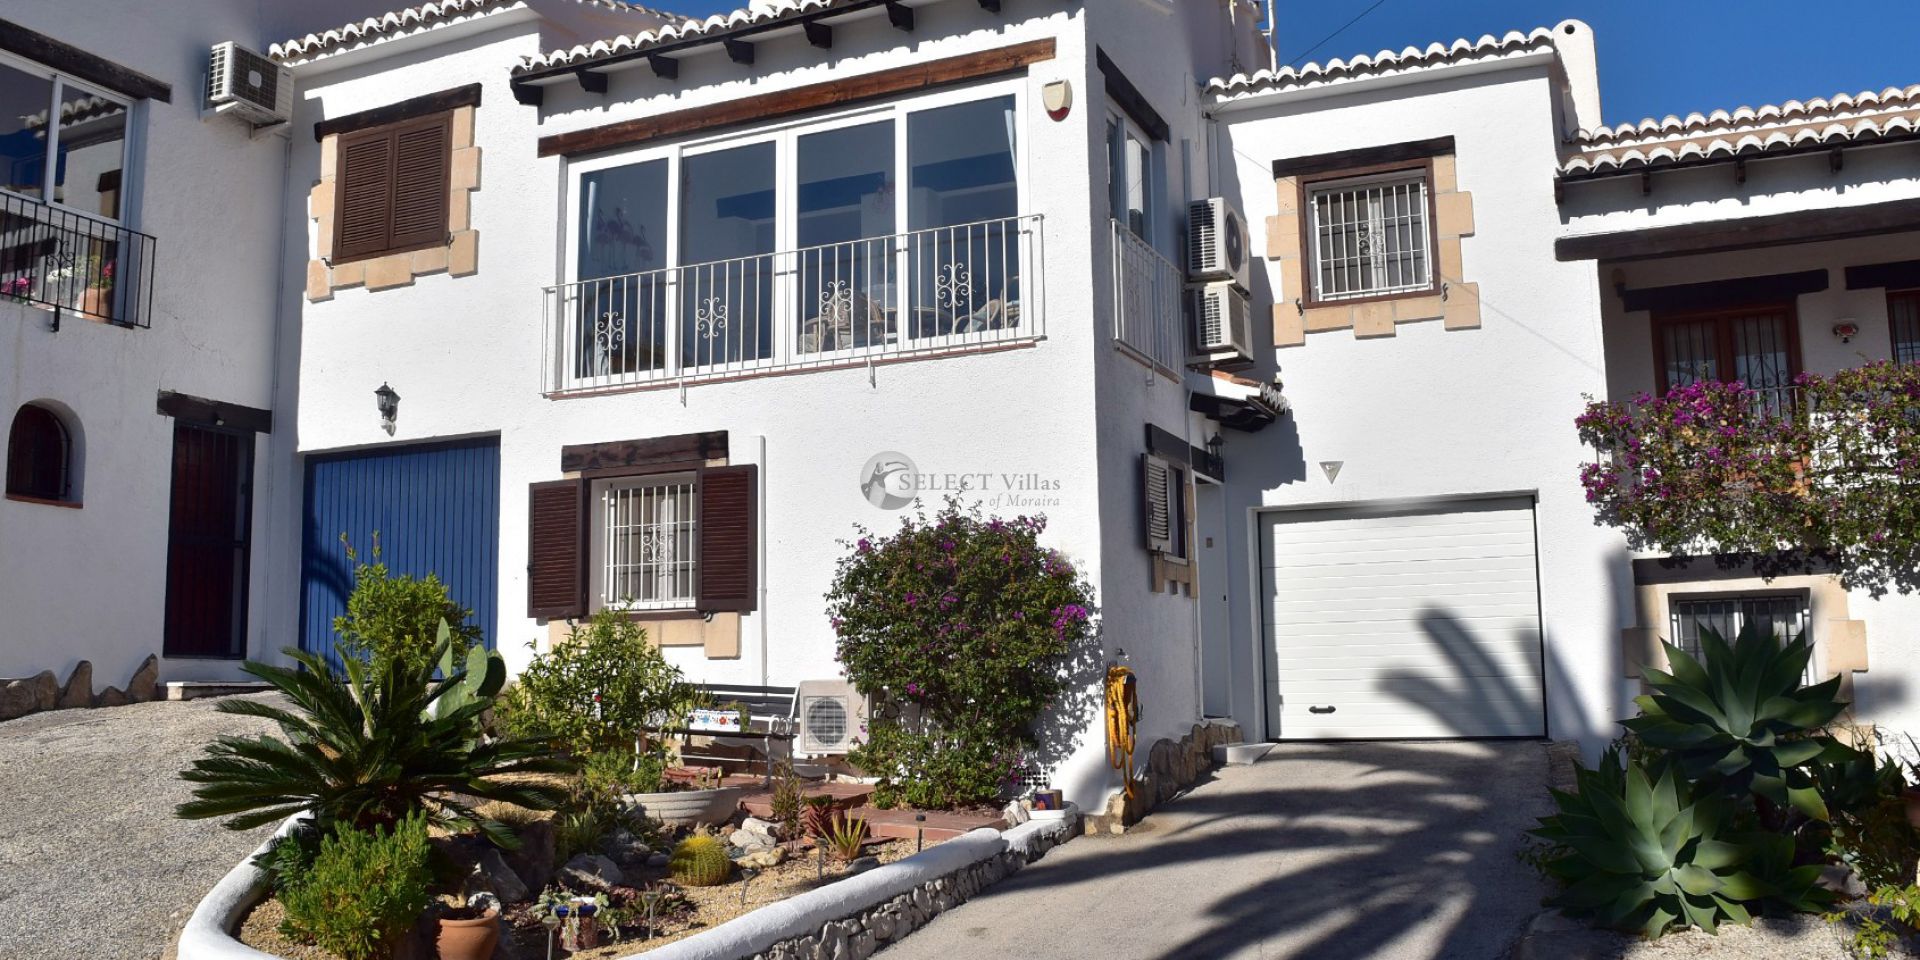 Verbundene Villa zum Verkauf in Moraira